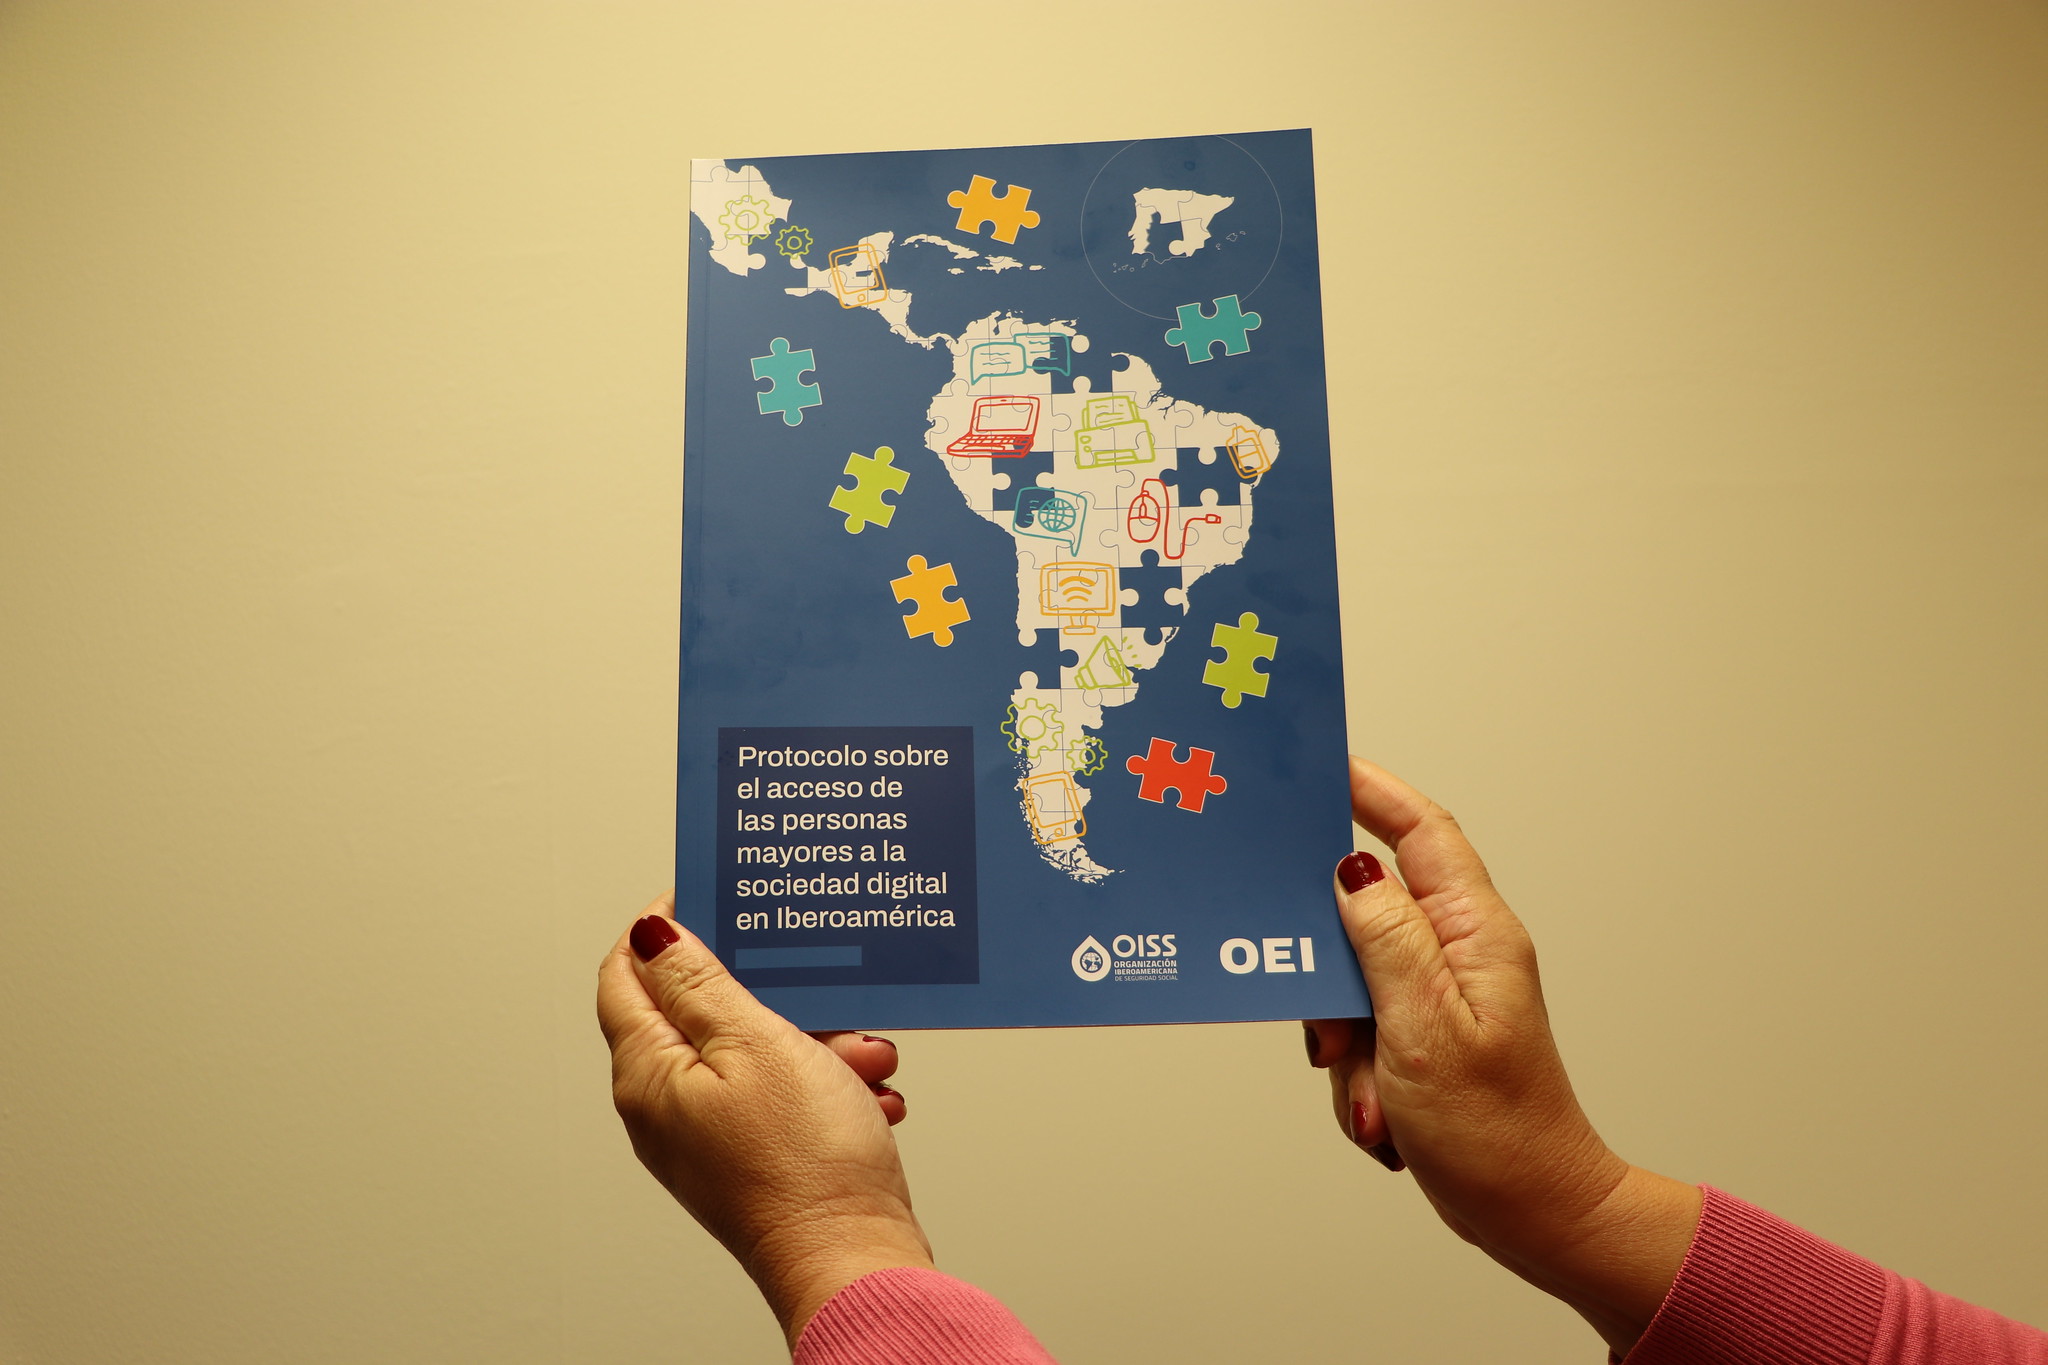 OEI y OISS lanzan protocolo para impulsar la inclusión digital de las personas mayores en Iberoamérica